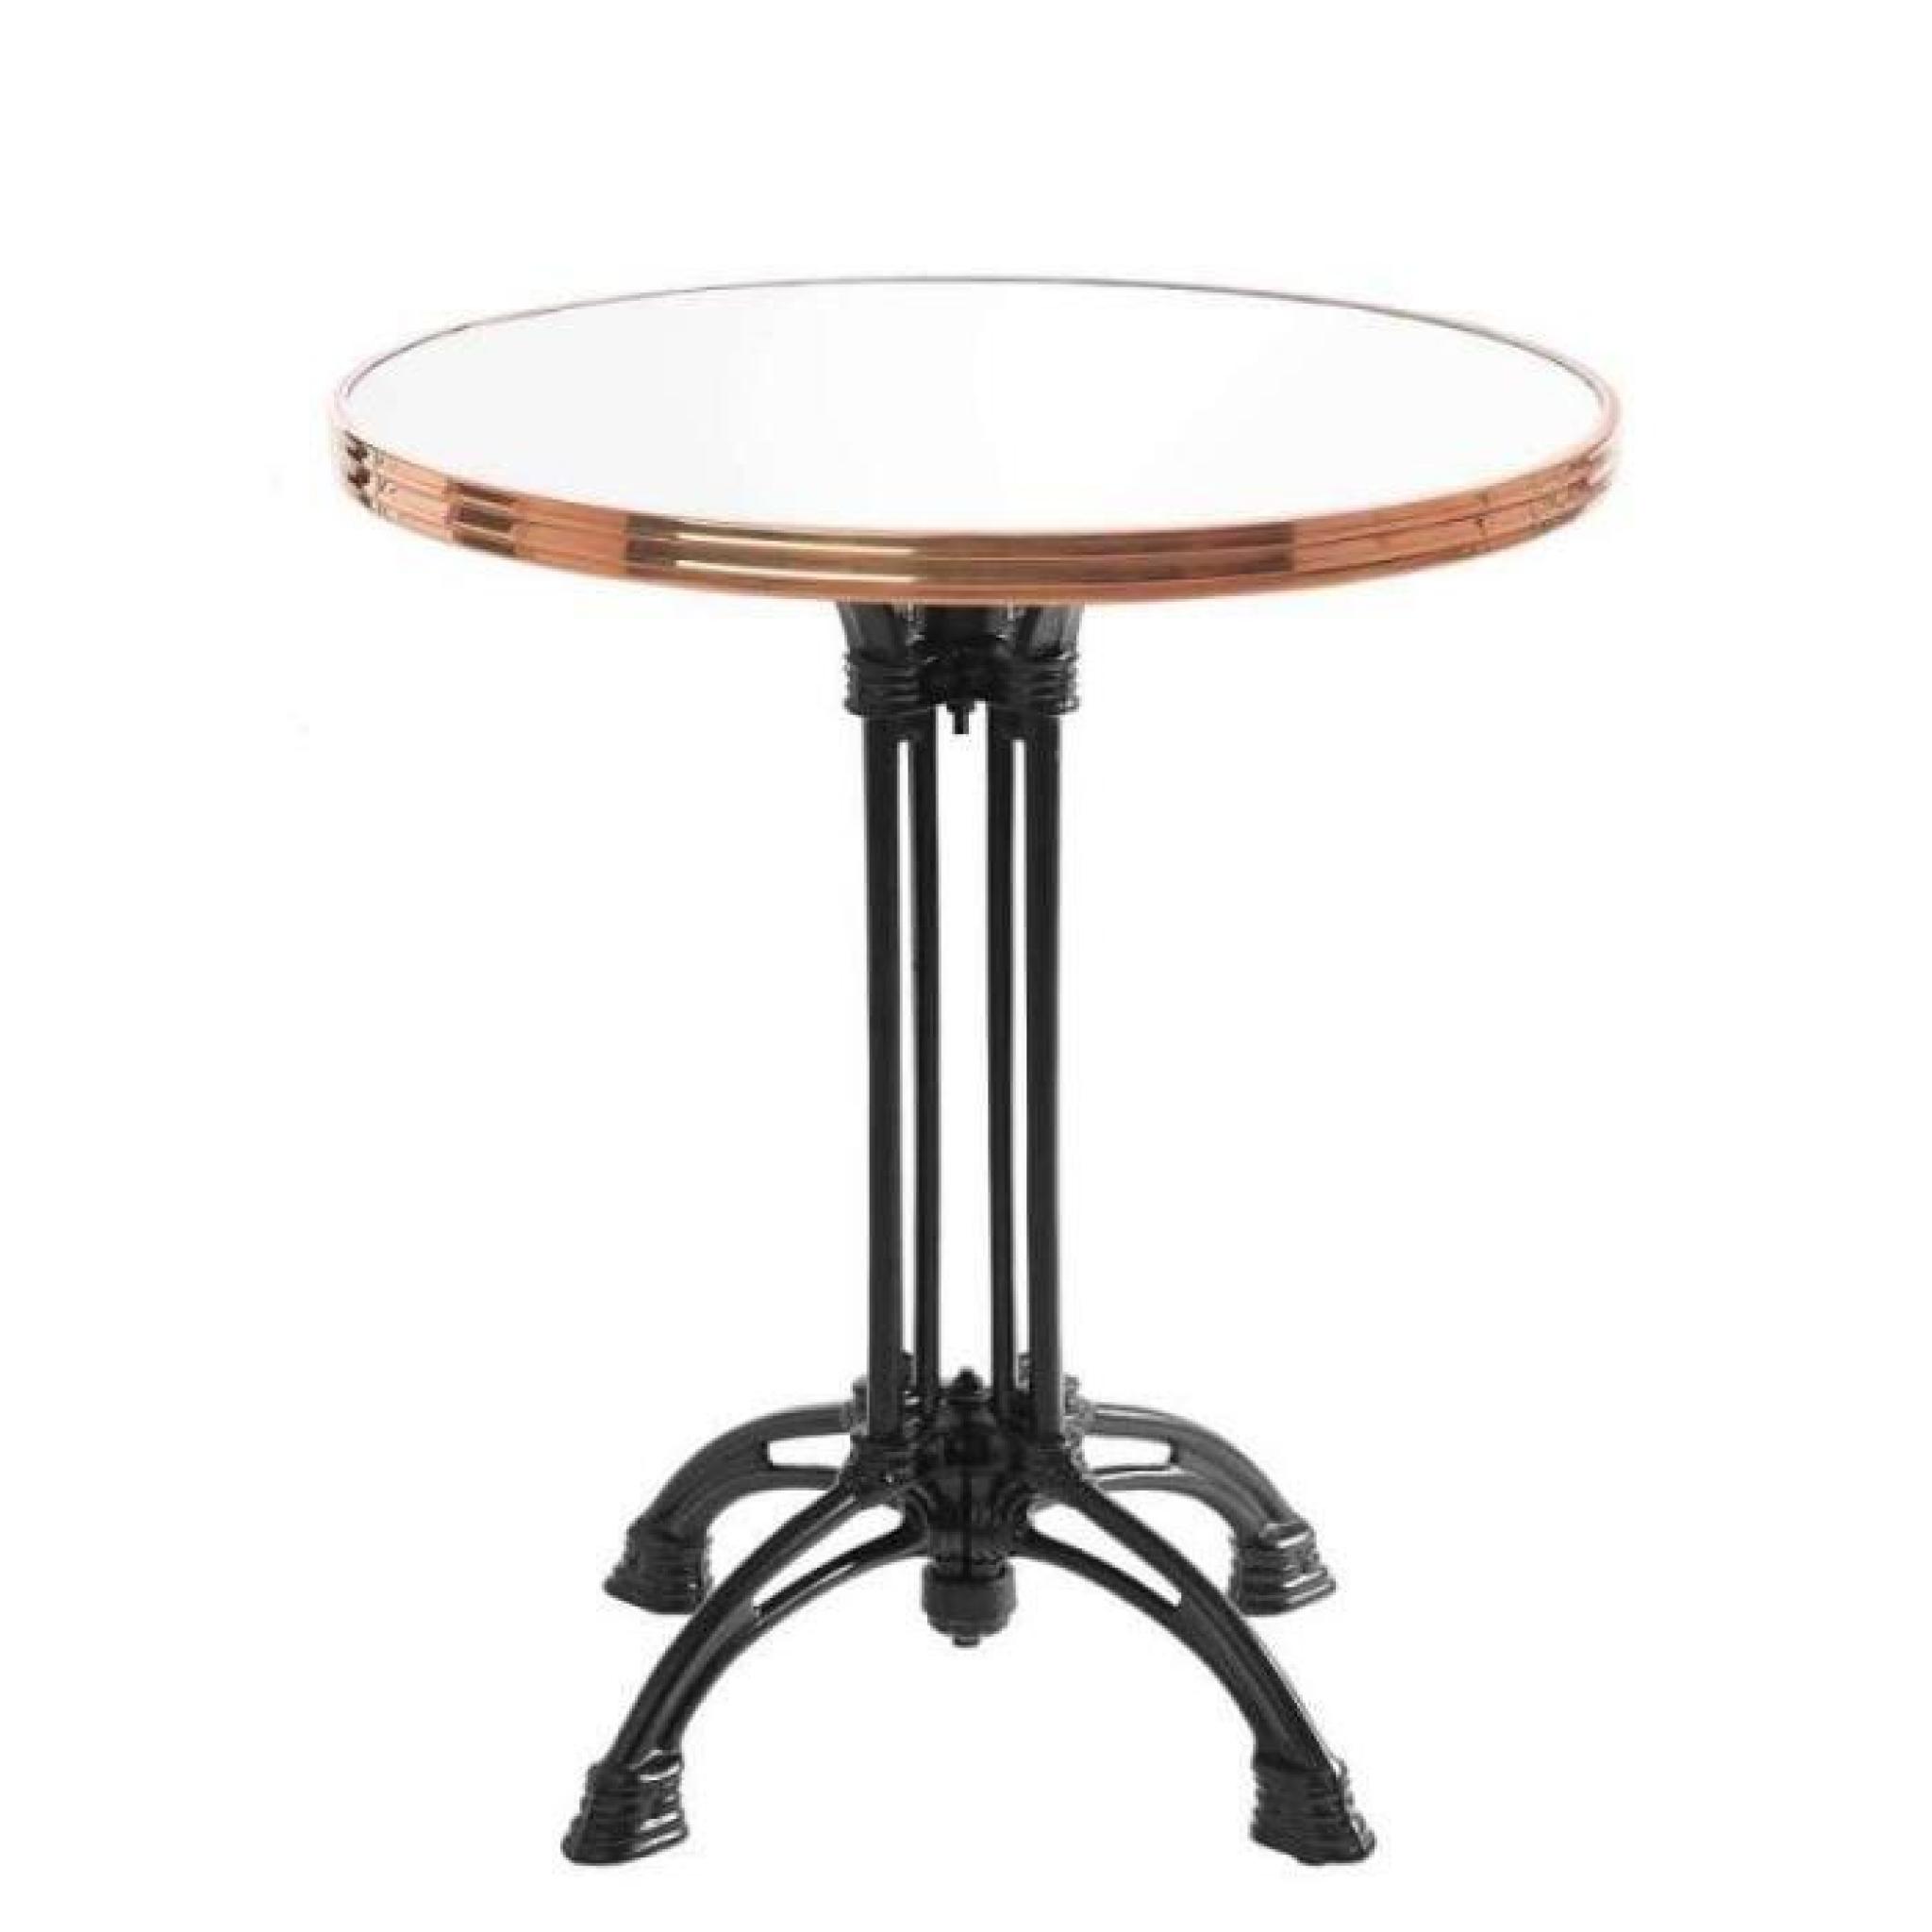 table bistrot ronde blanc avec cerclage en cuivre - pied eiffel 3 branches - h70 x d50 cm